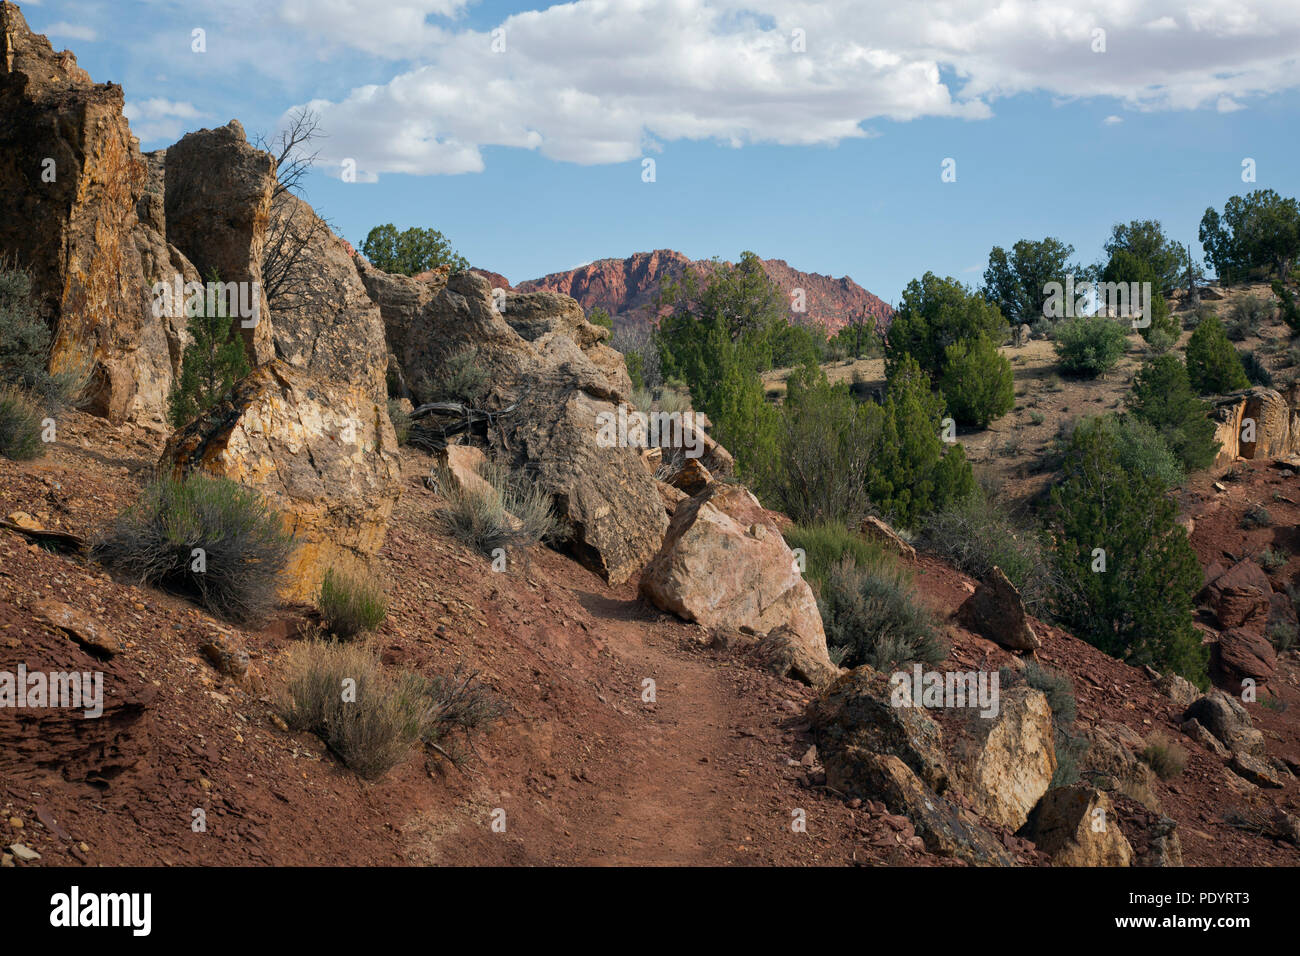 AZ 00250-00 ... ARIZONA - Weg im Labyrinth Rock Kunst in der Paria Canyon - Vermilion Cliffs Wilderness mit Coyote Buttes in der Ferne. Stockfoto